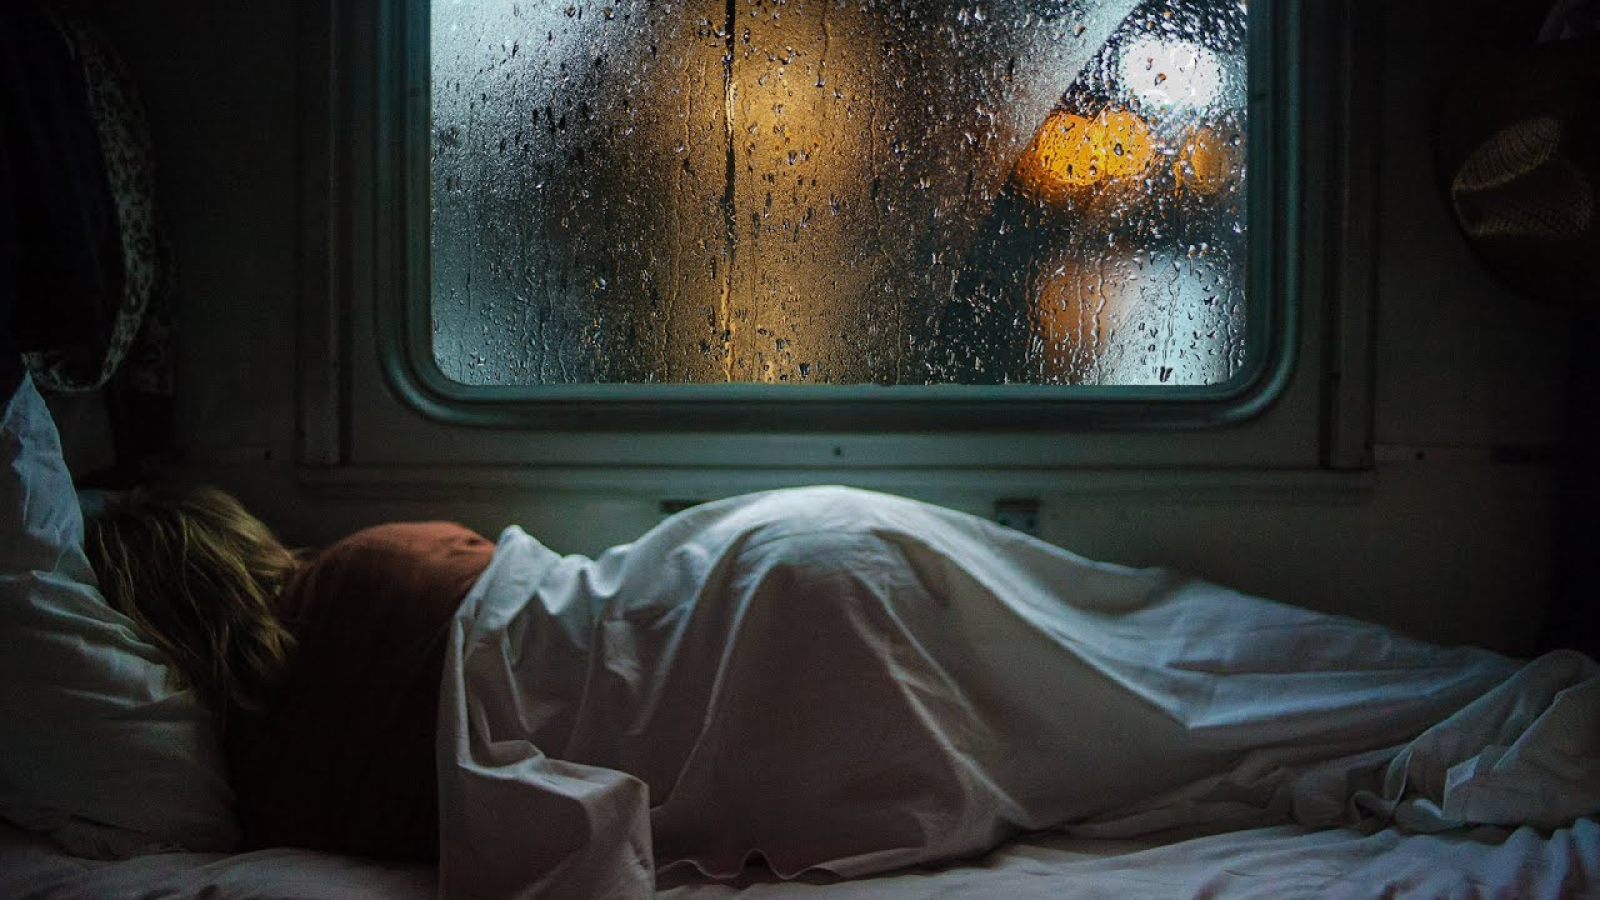 Сонник видеть окно. Девушка в поезде. Поезд. Поезд ночью. Люди спят в поезде.